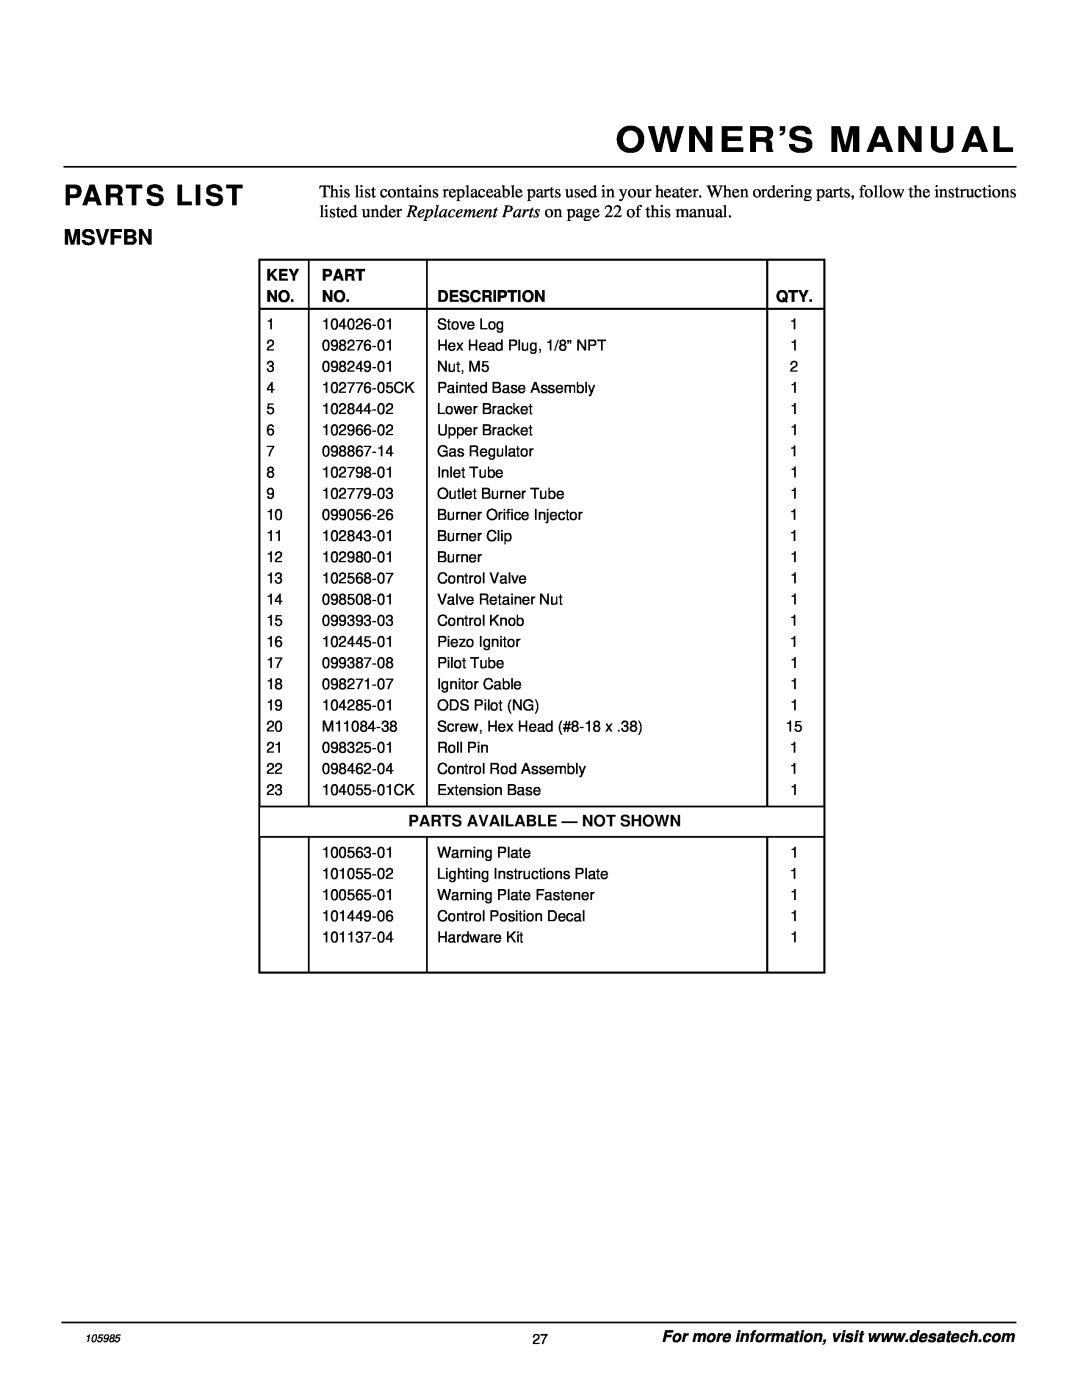 Desa MSVFBNR Series installation manual Owner’S Manual, Parts List, Msvfbn, 104026-01 